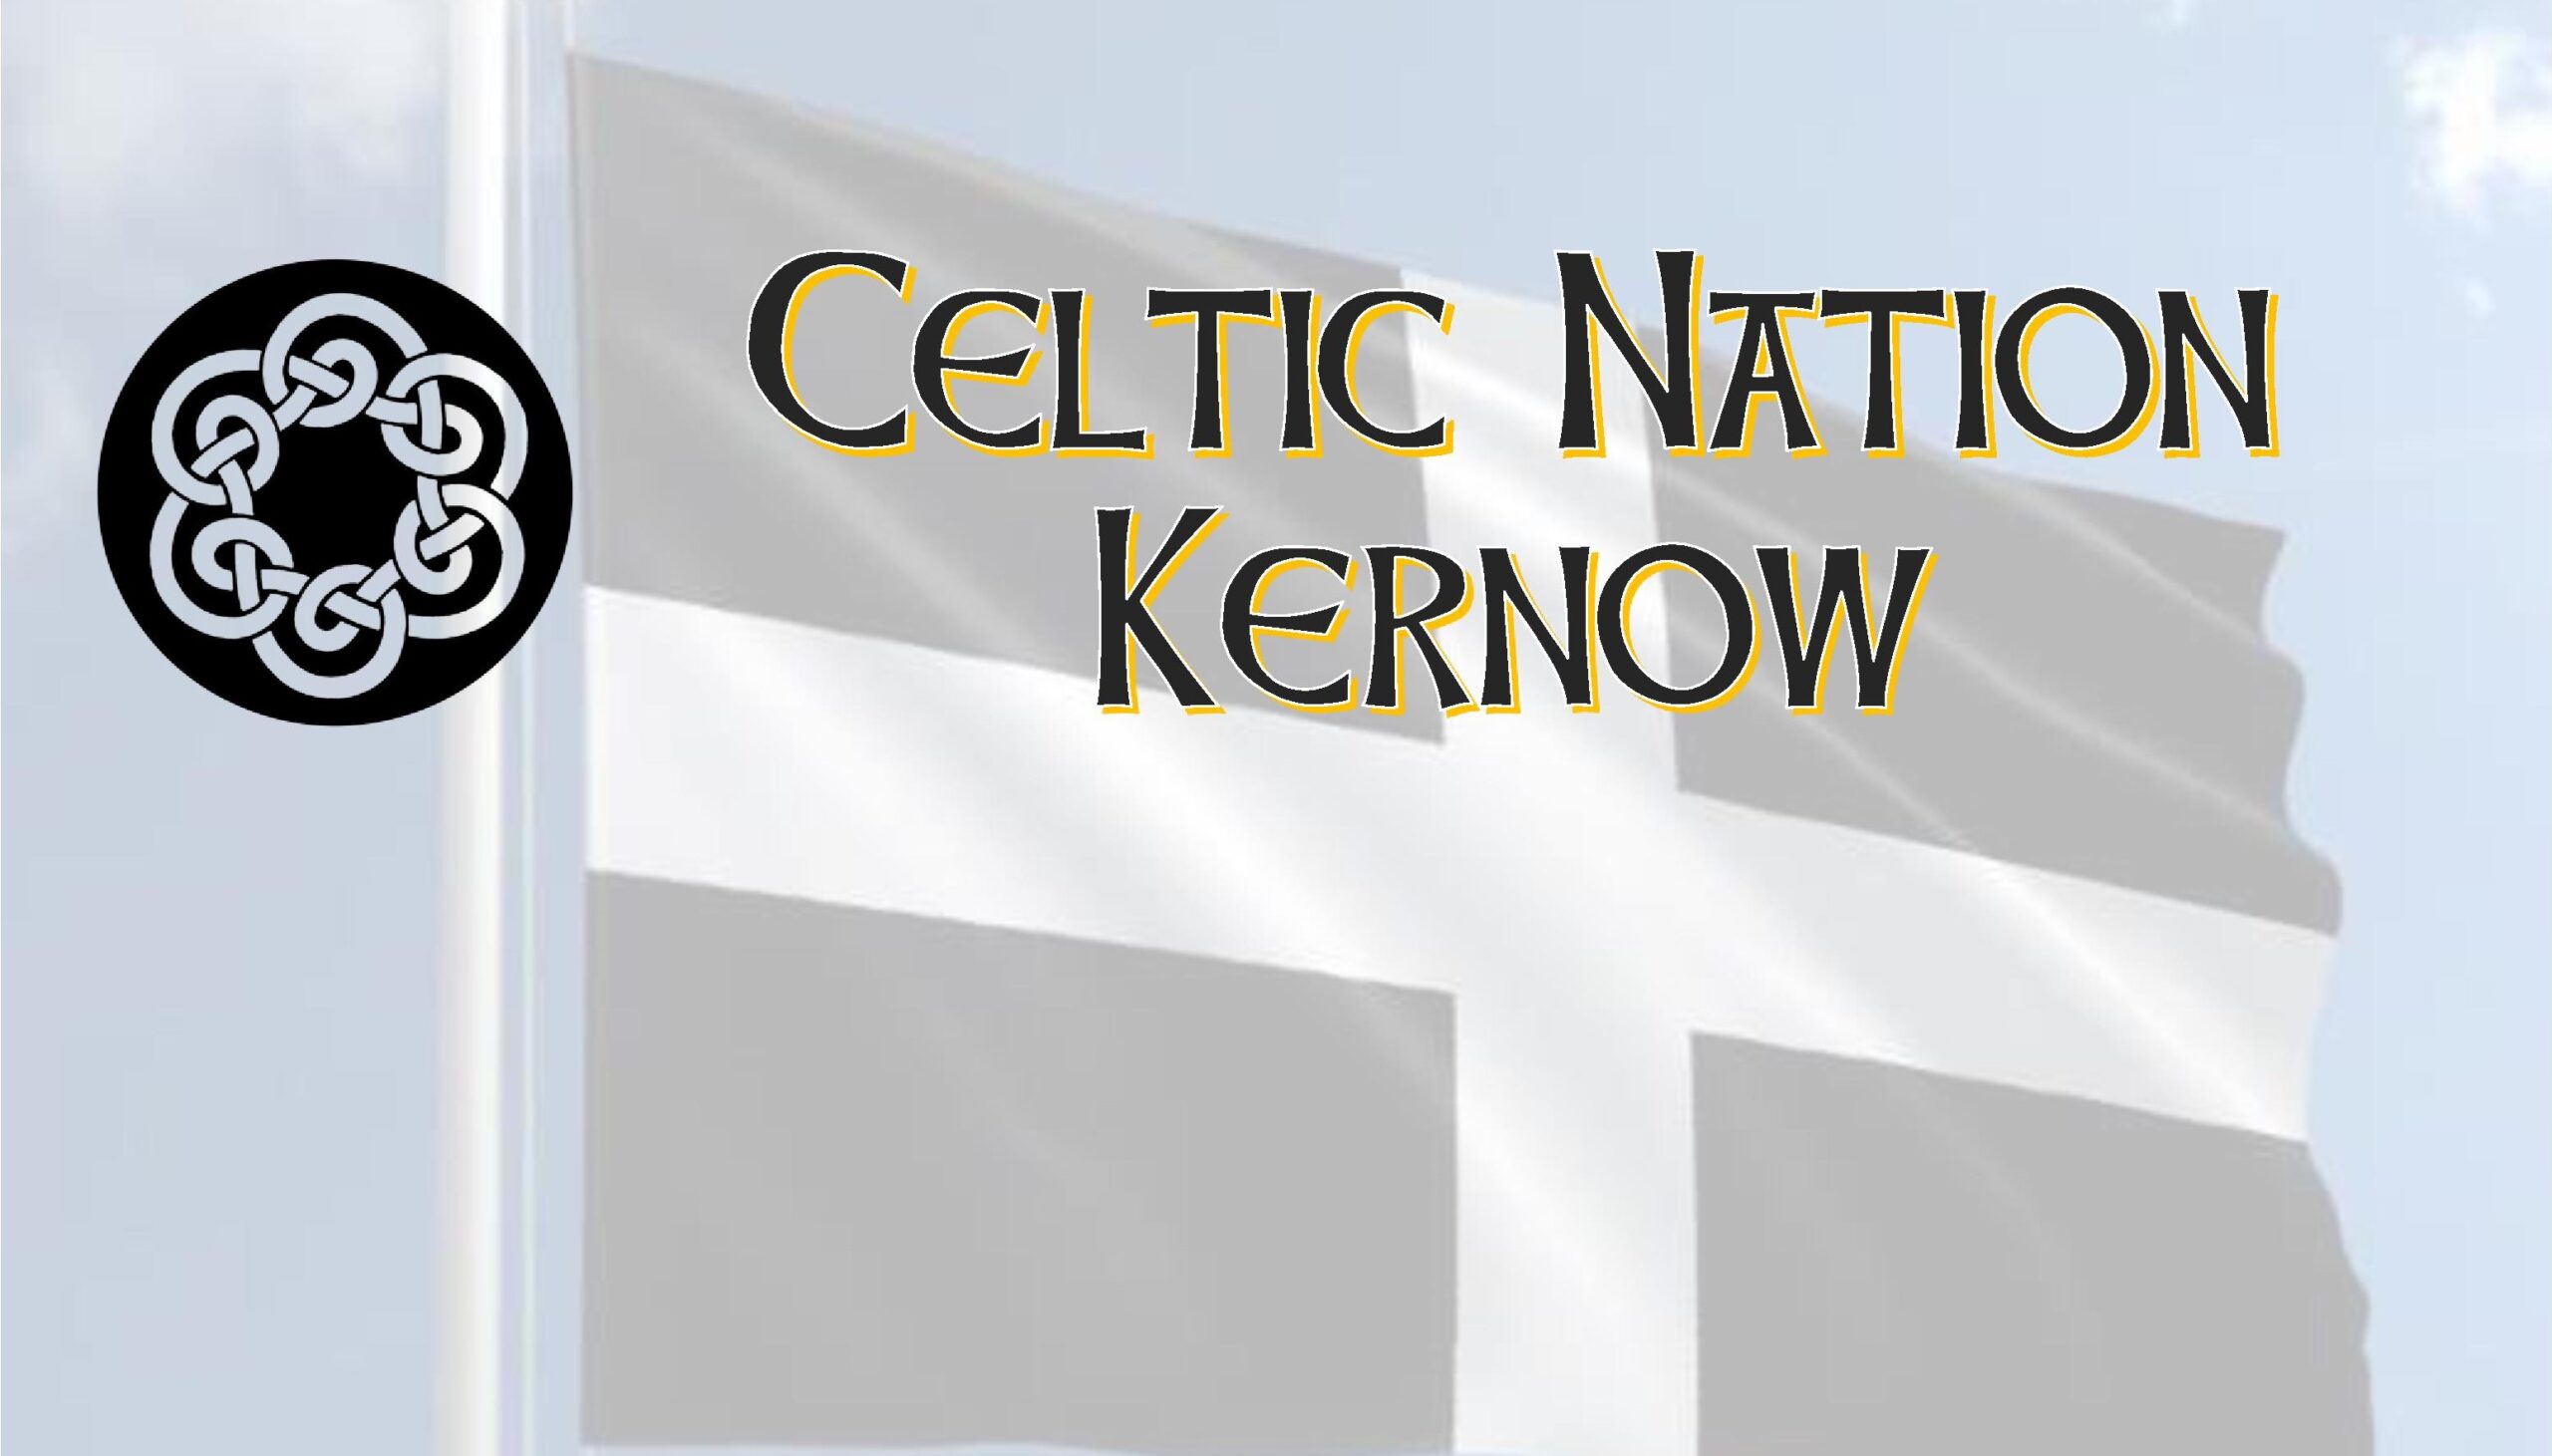 Celtic Nation Kernow